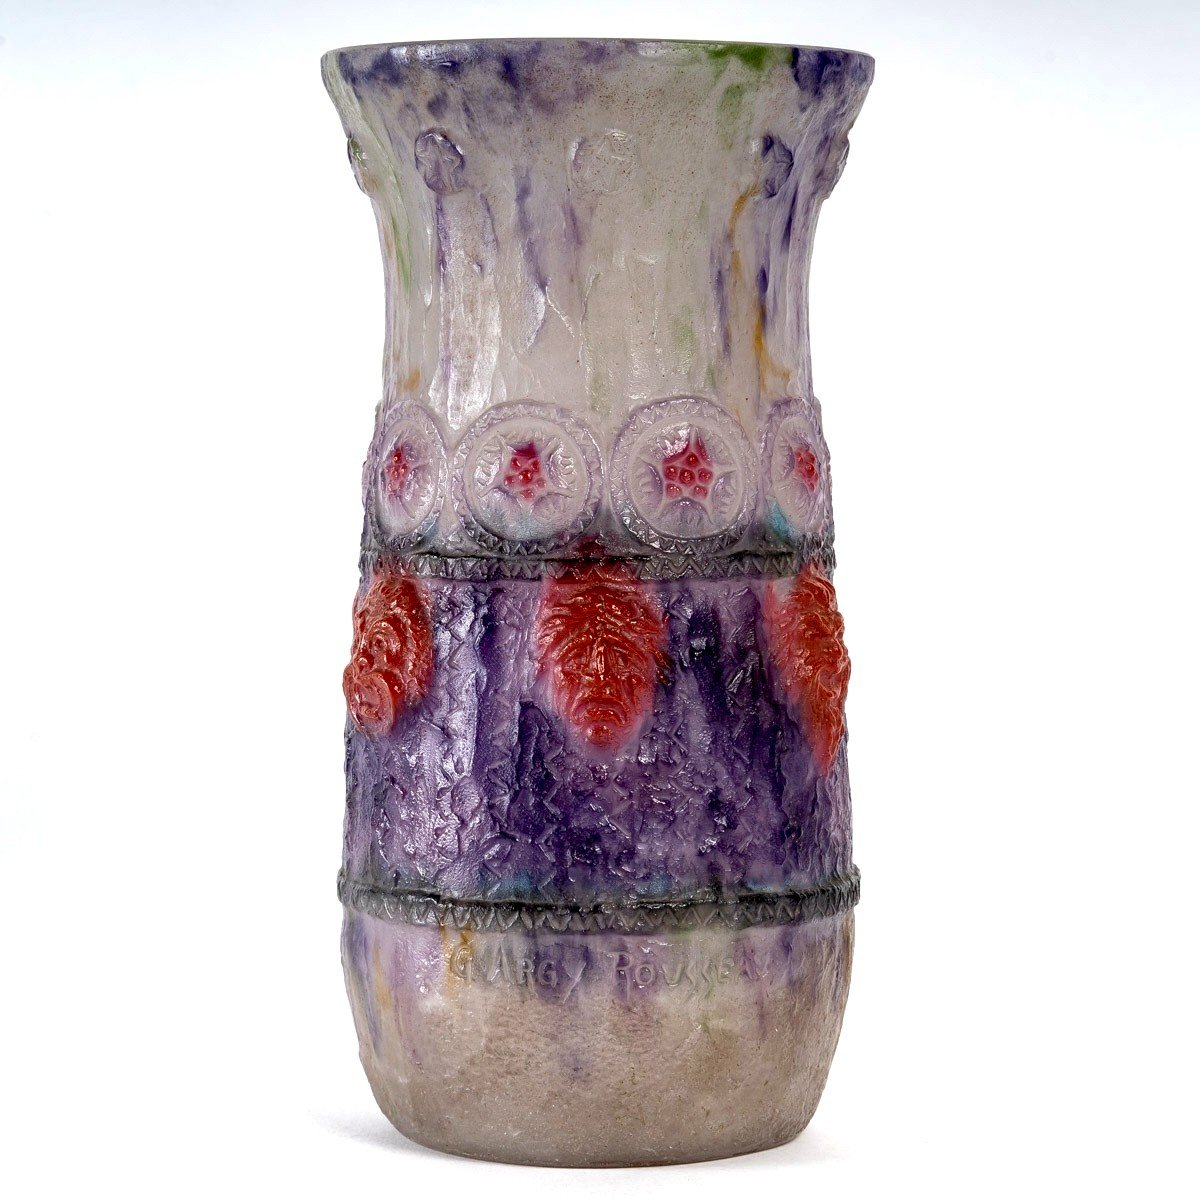 1922 Gabriel Argy Rousseau - Vase Tragi Comique Pate De Verre Glass